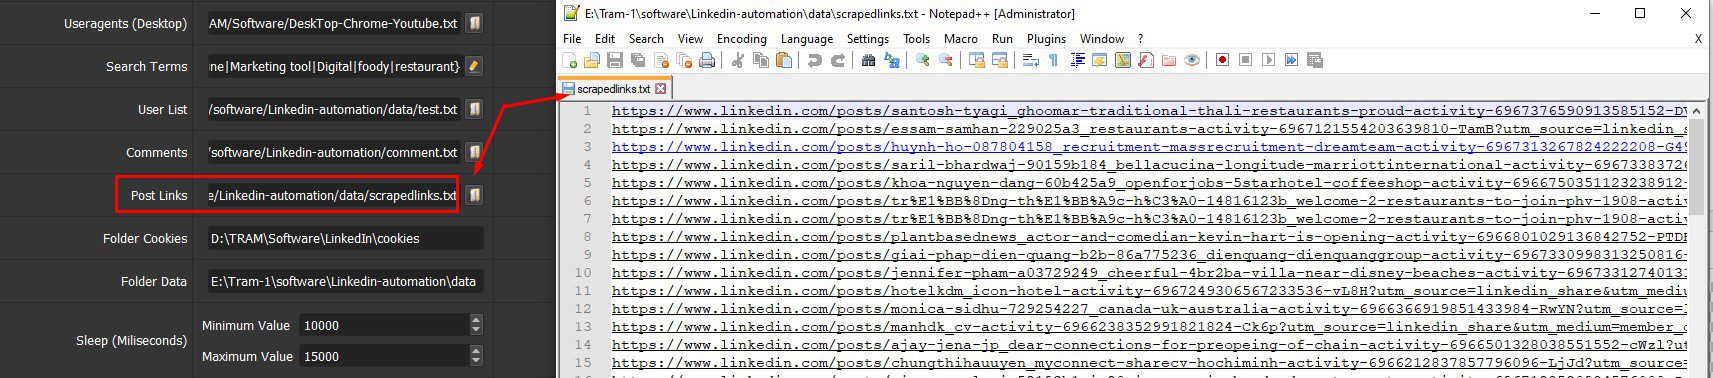 Dẫn tới file lưu link bài đăng muốn bình luận - Phần mềm LinkedIn Automation